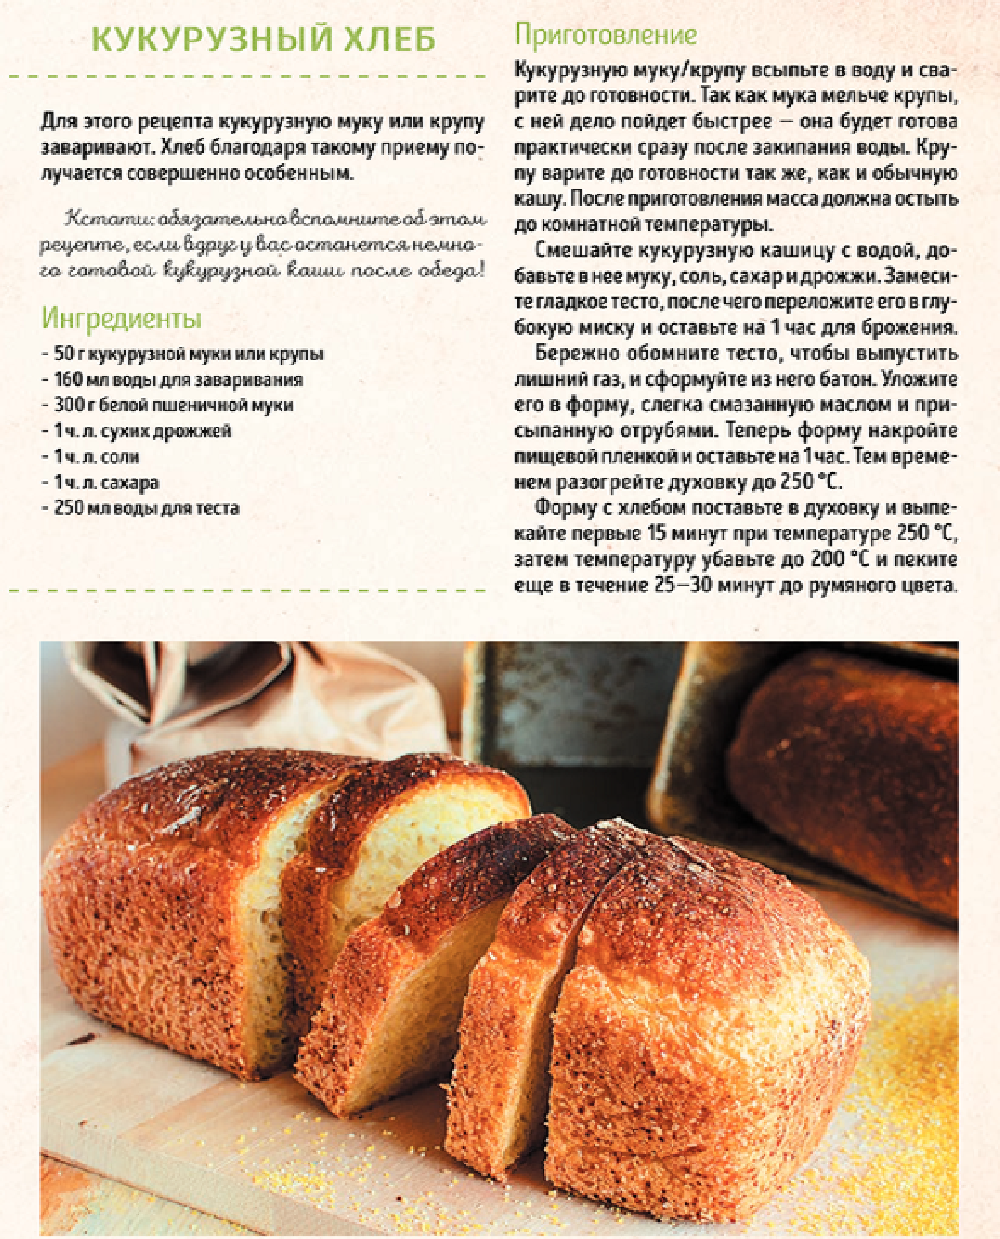 Рецепт хлеба. Рецепт хлебобулочных изделий. Рецептура хлеба и хлебобулочных изделий. Рецептура приготовления хлеба. Печь в хлебопечке рецепты